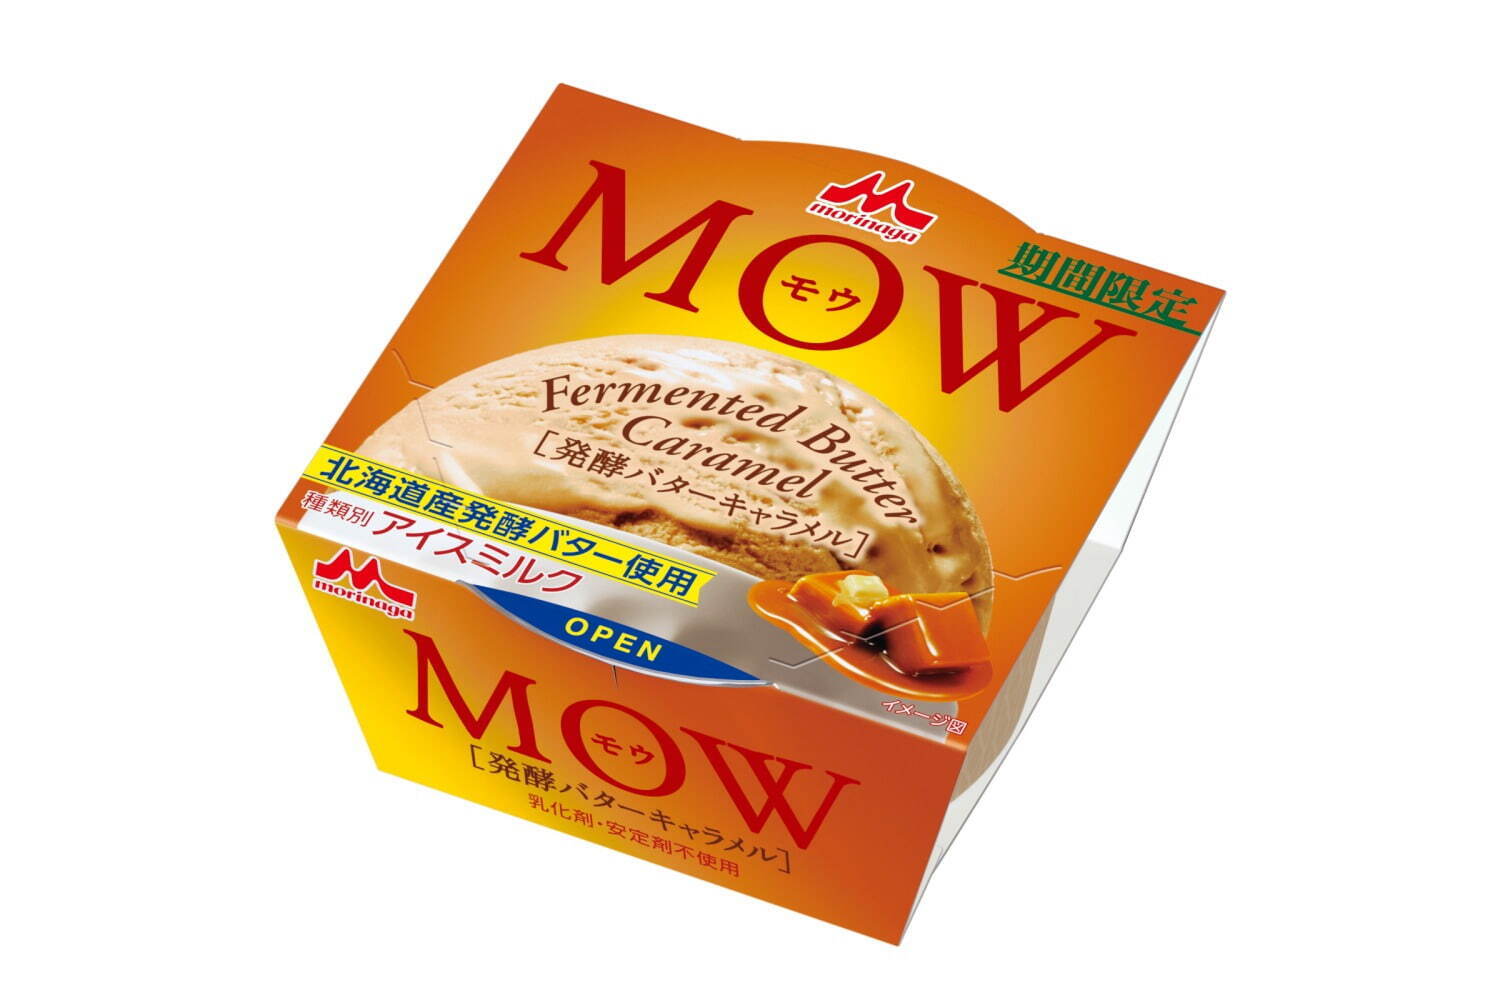 「モウ(MOW) 発酵バターキャラメル」176円